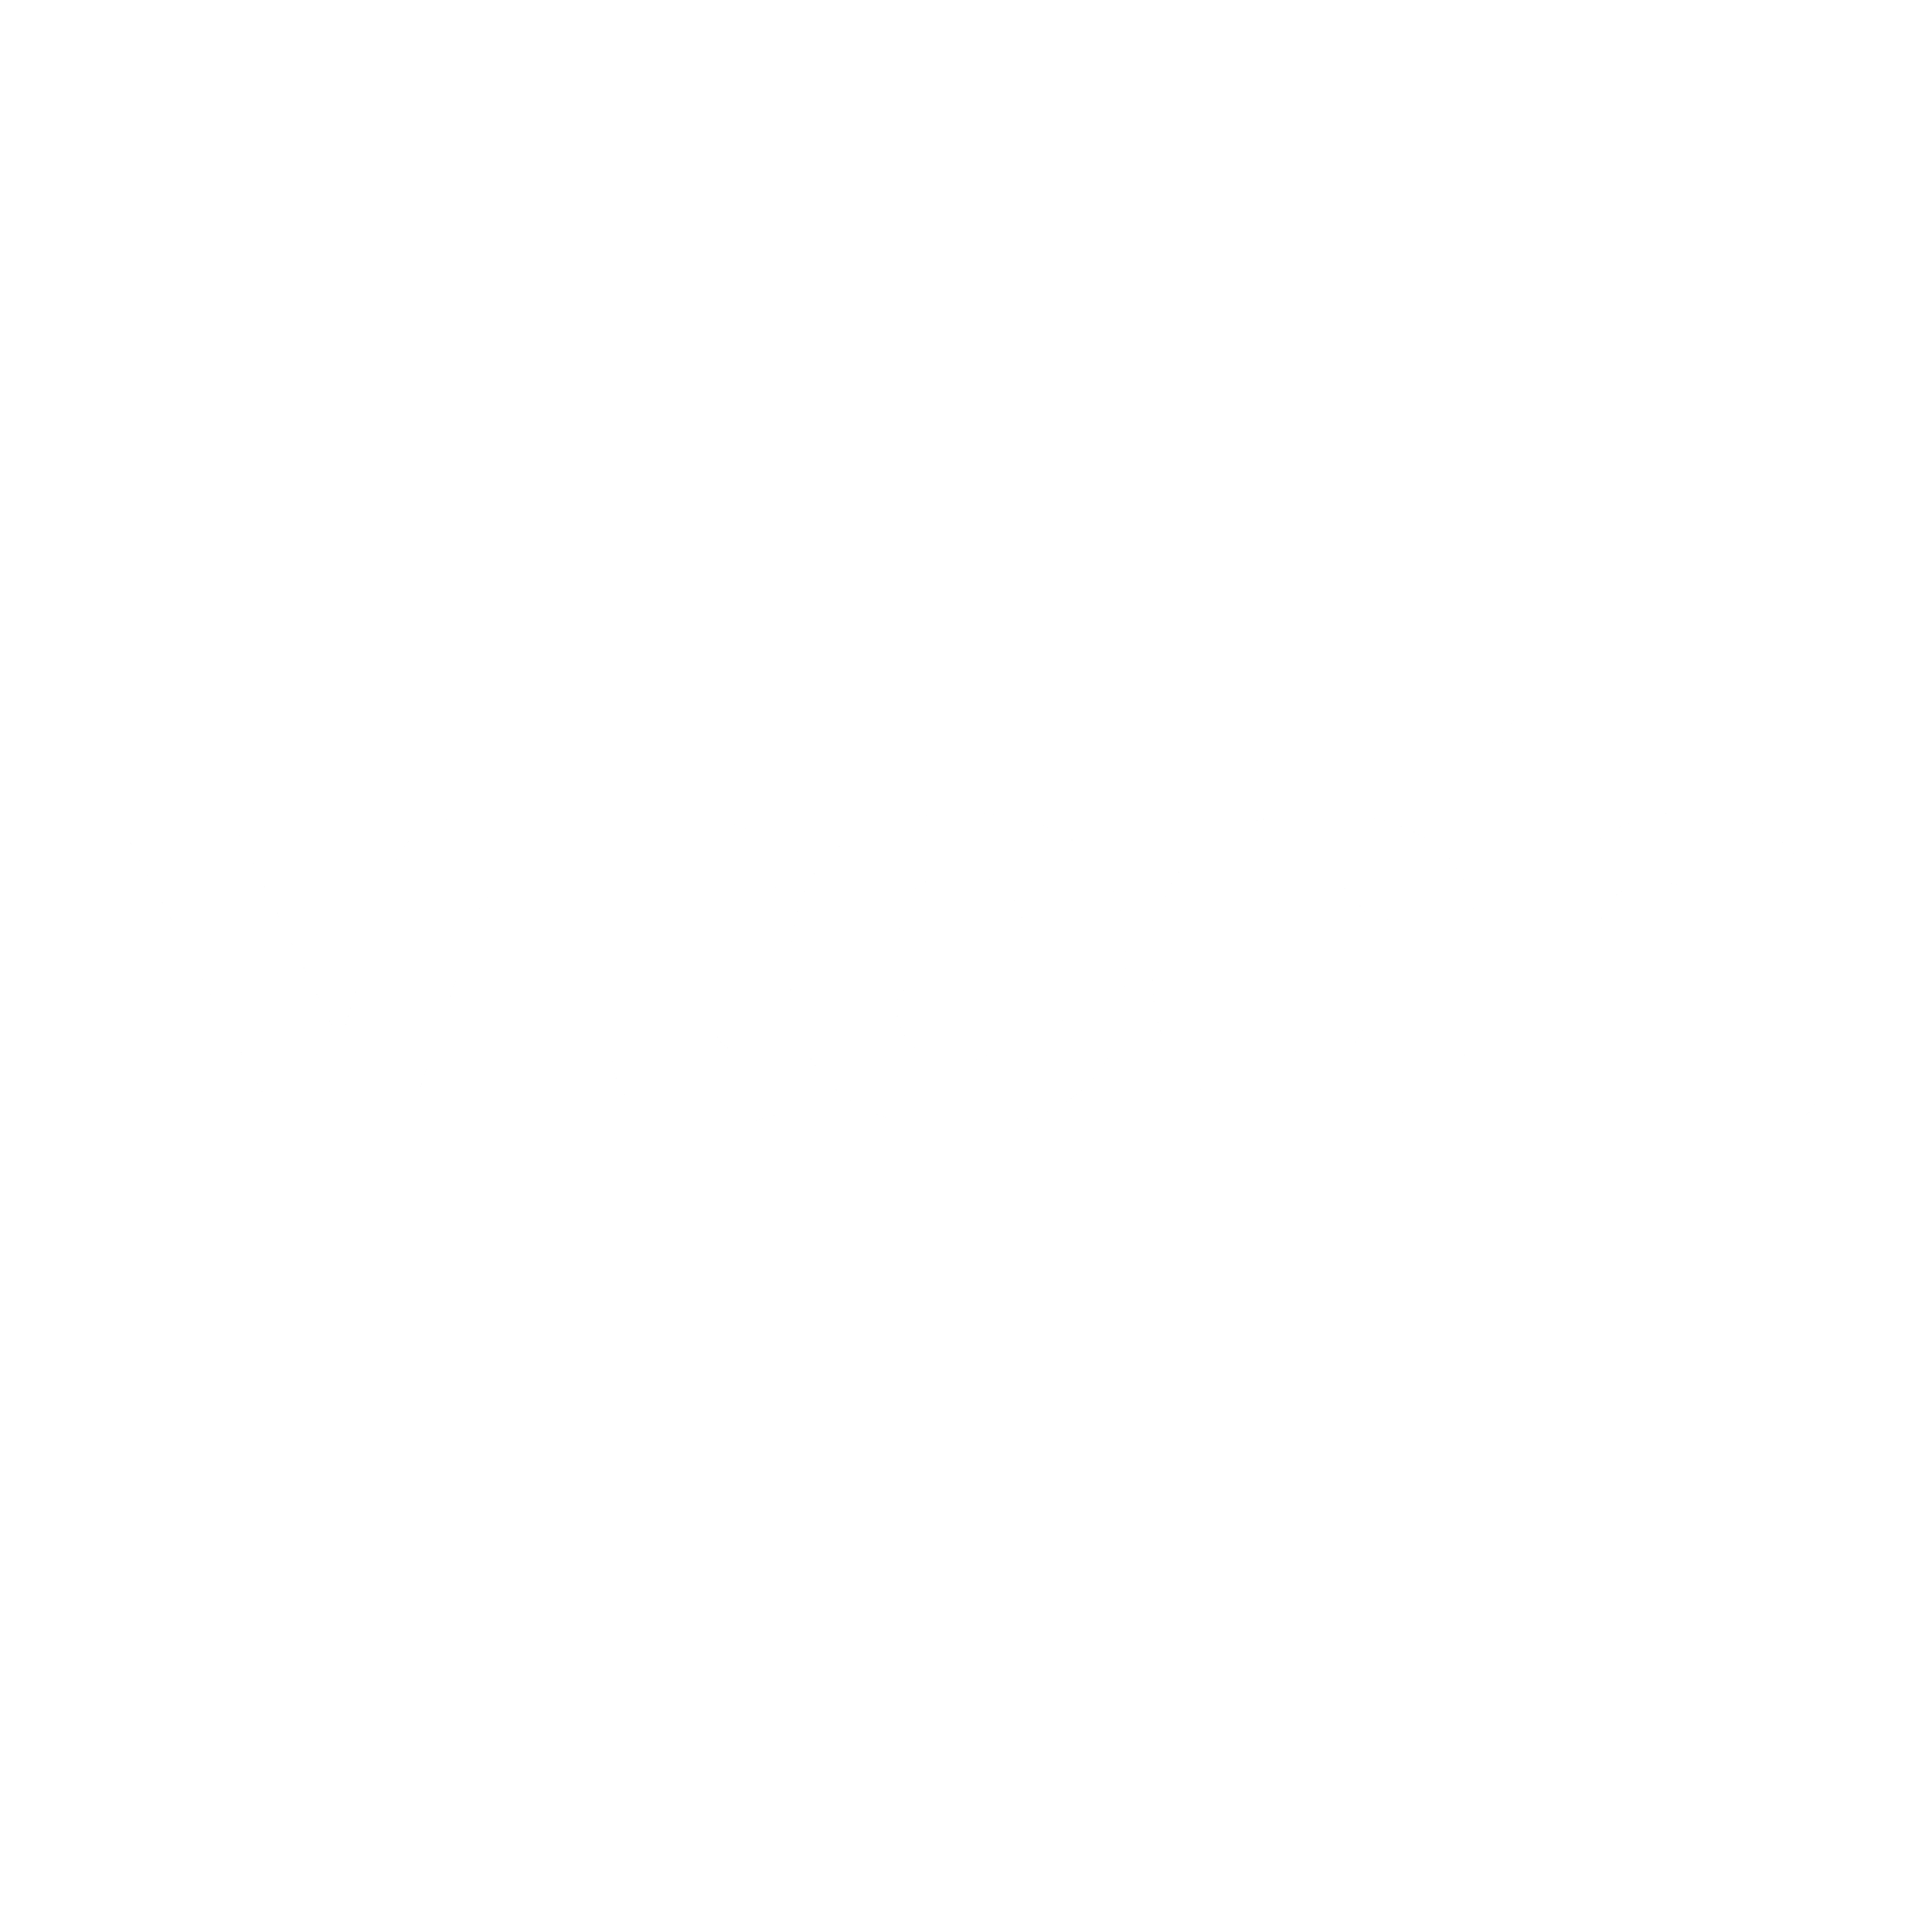 VTech Logo - VTech Logo PNG Transparent & SVG Vector